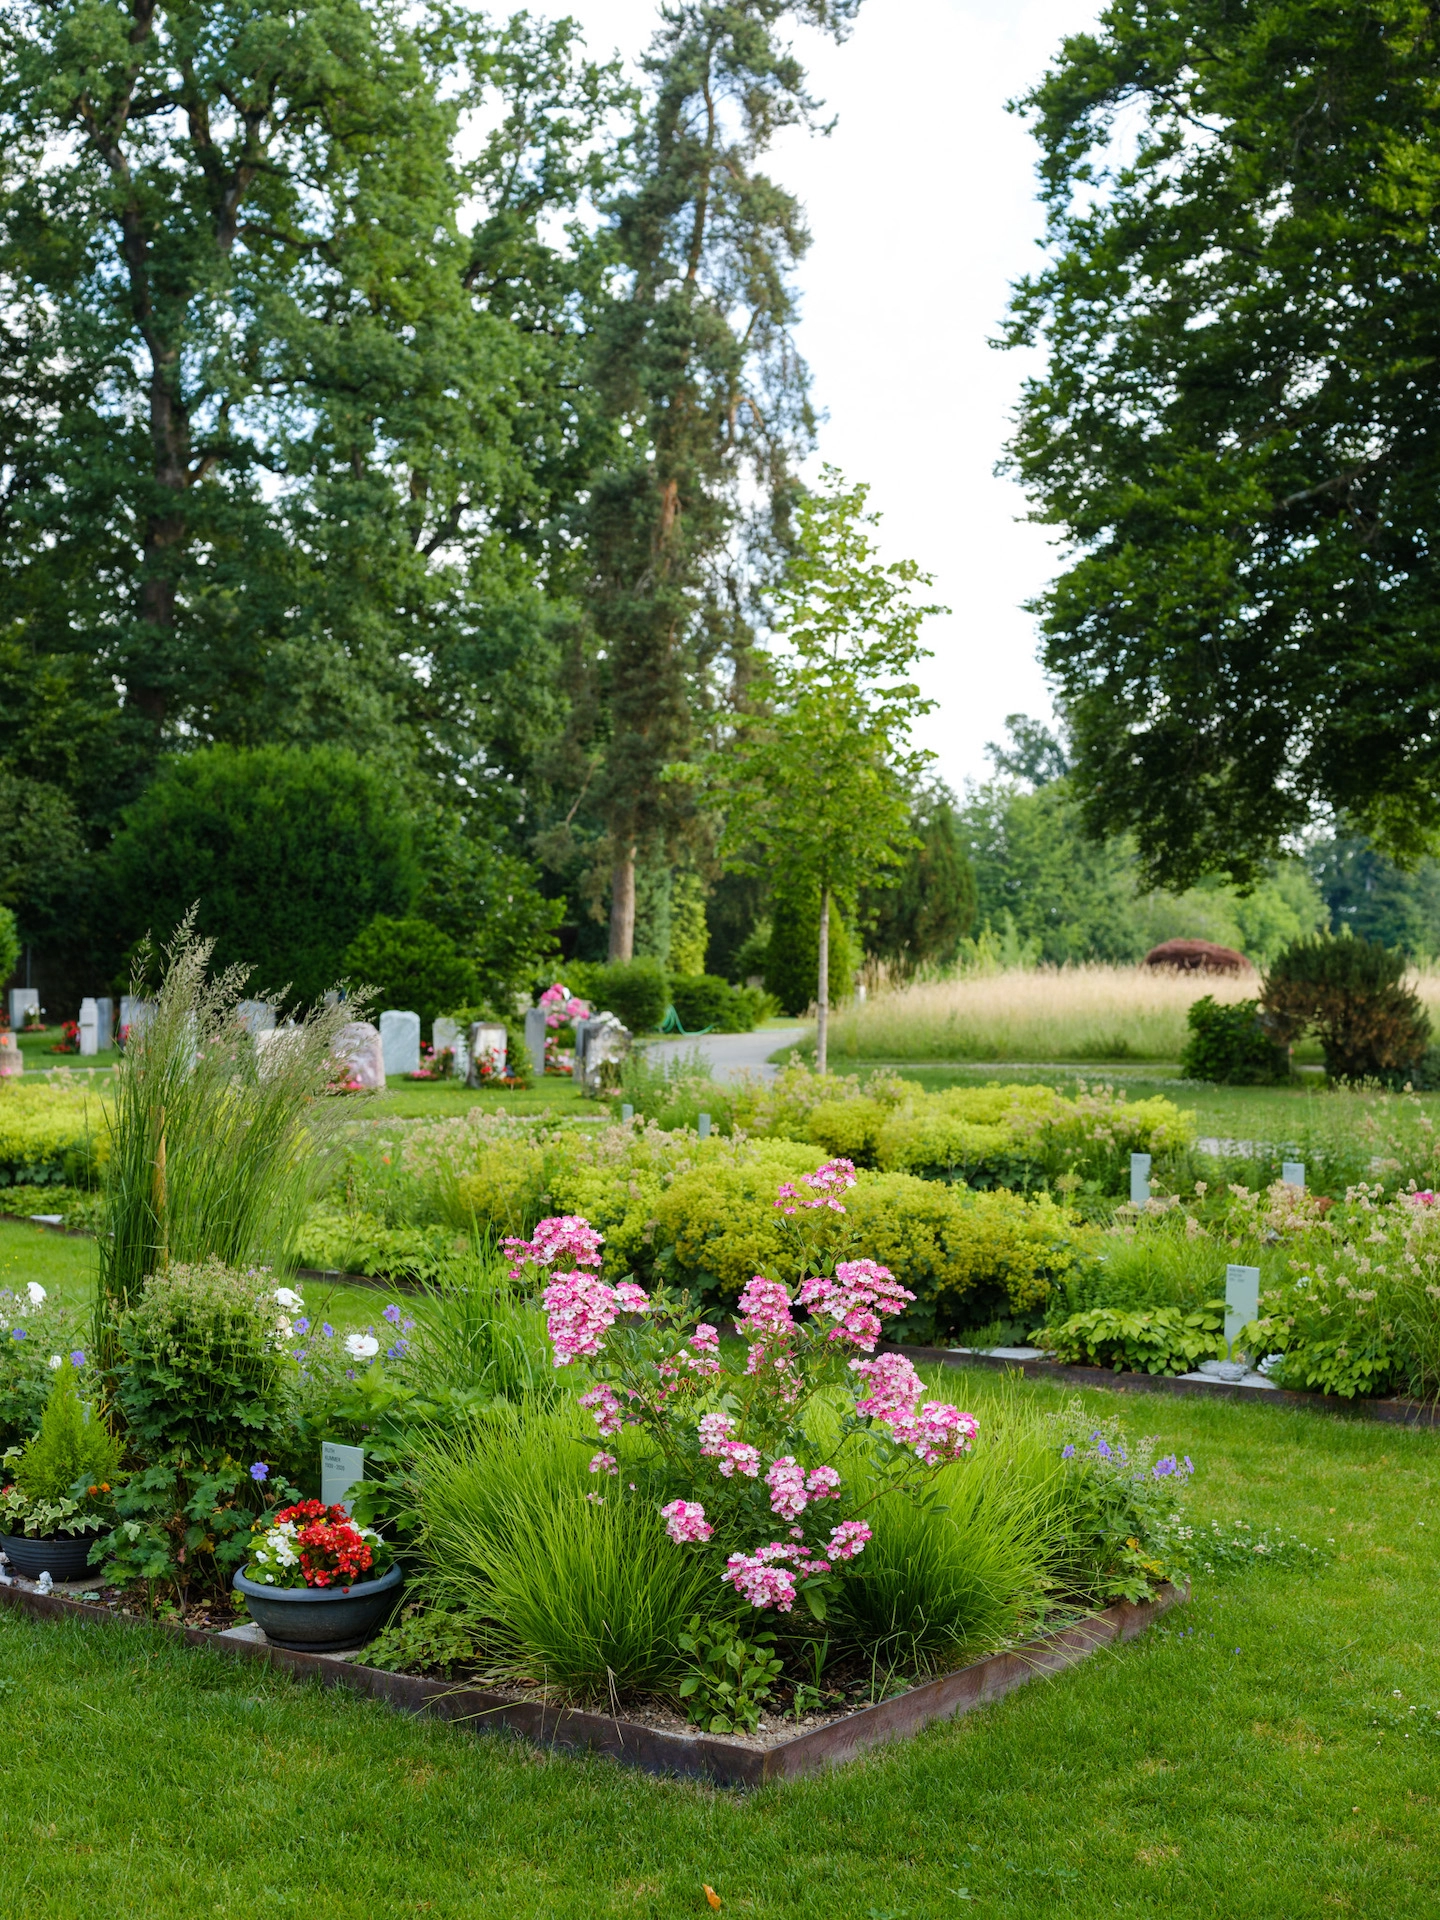 201803 Friedhof Zollikofen Bild 1